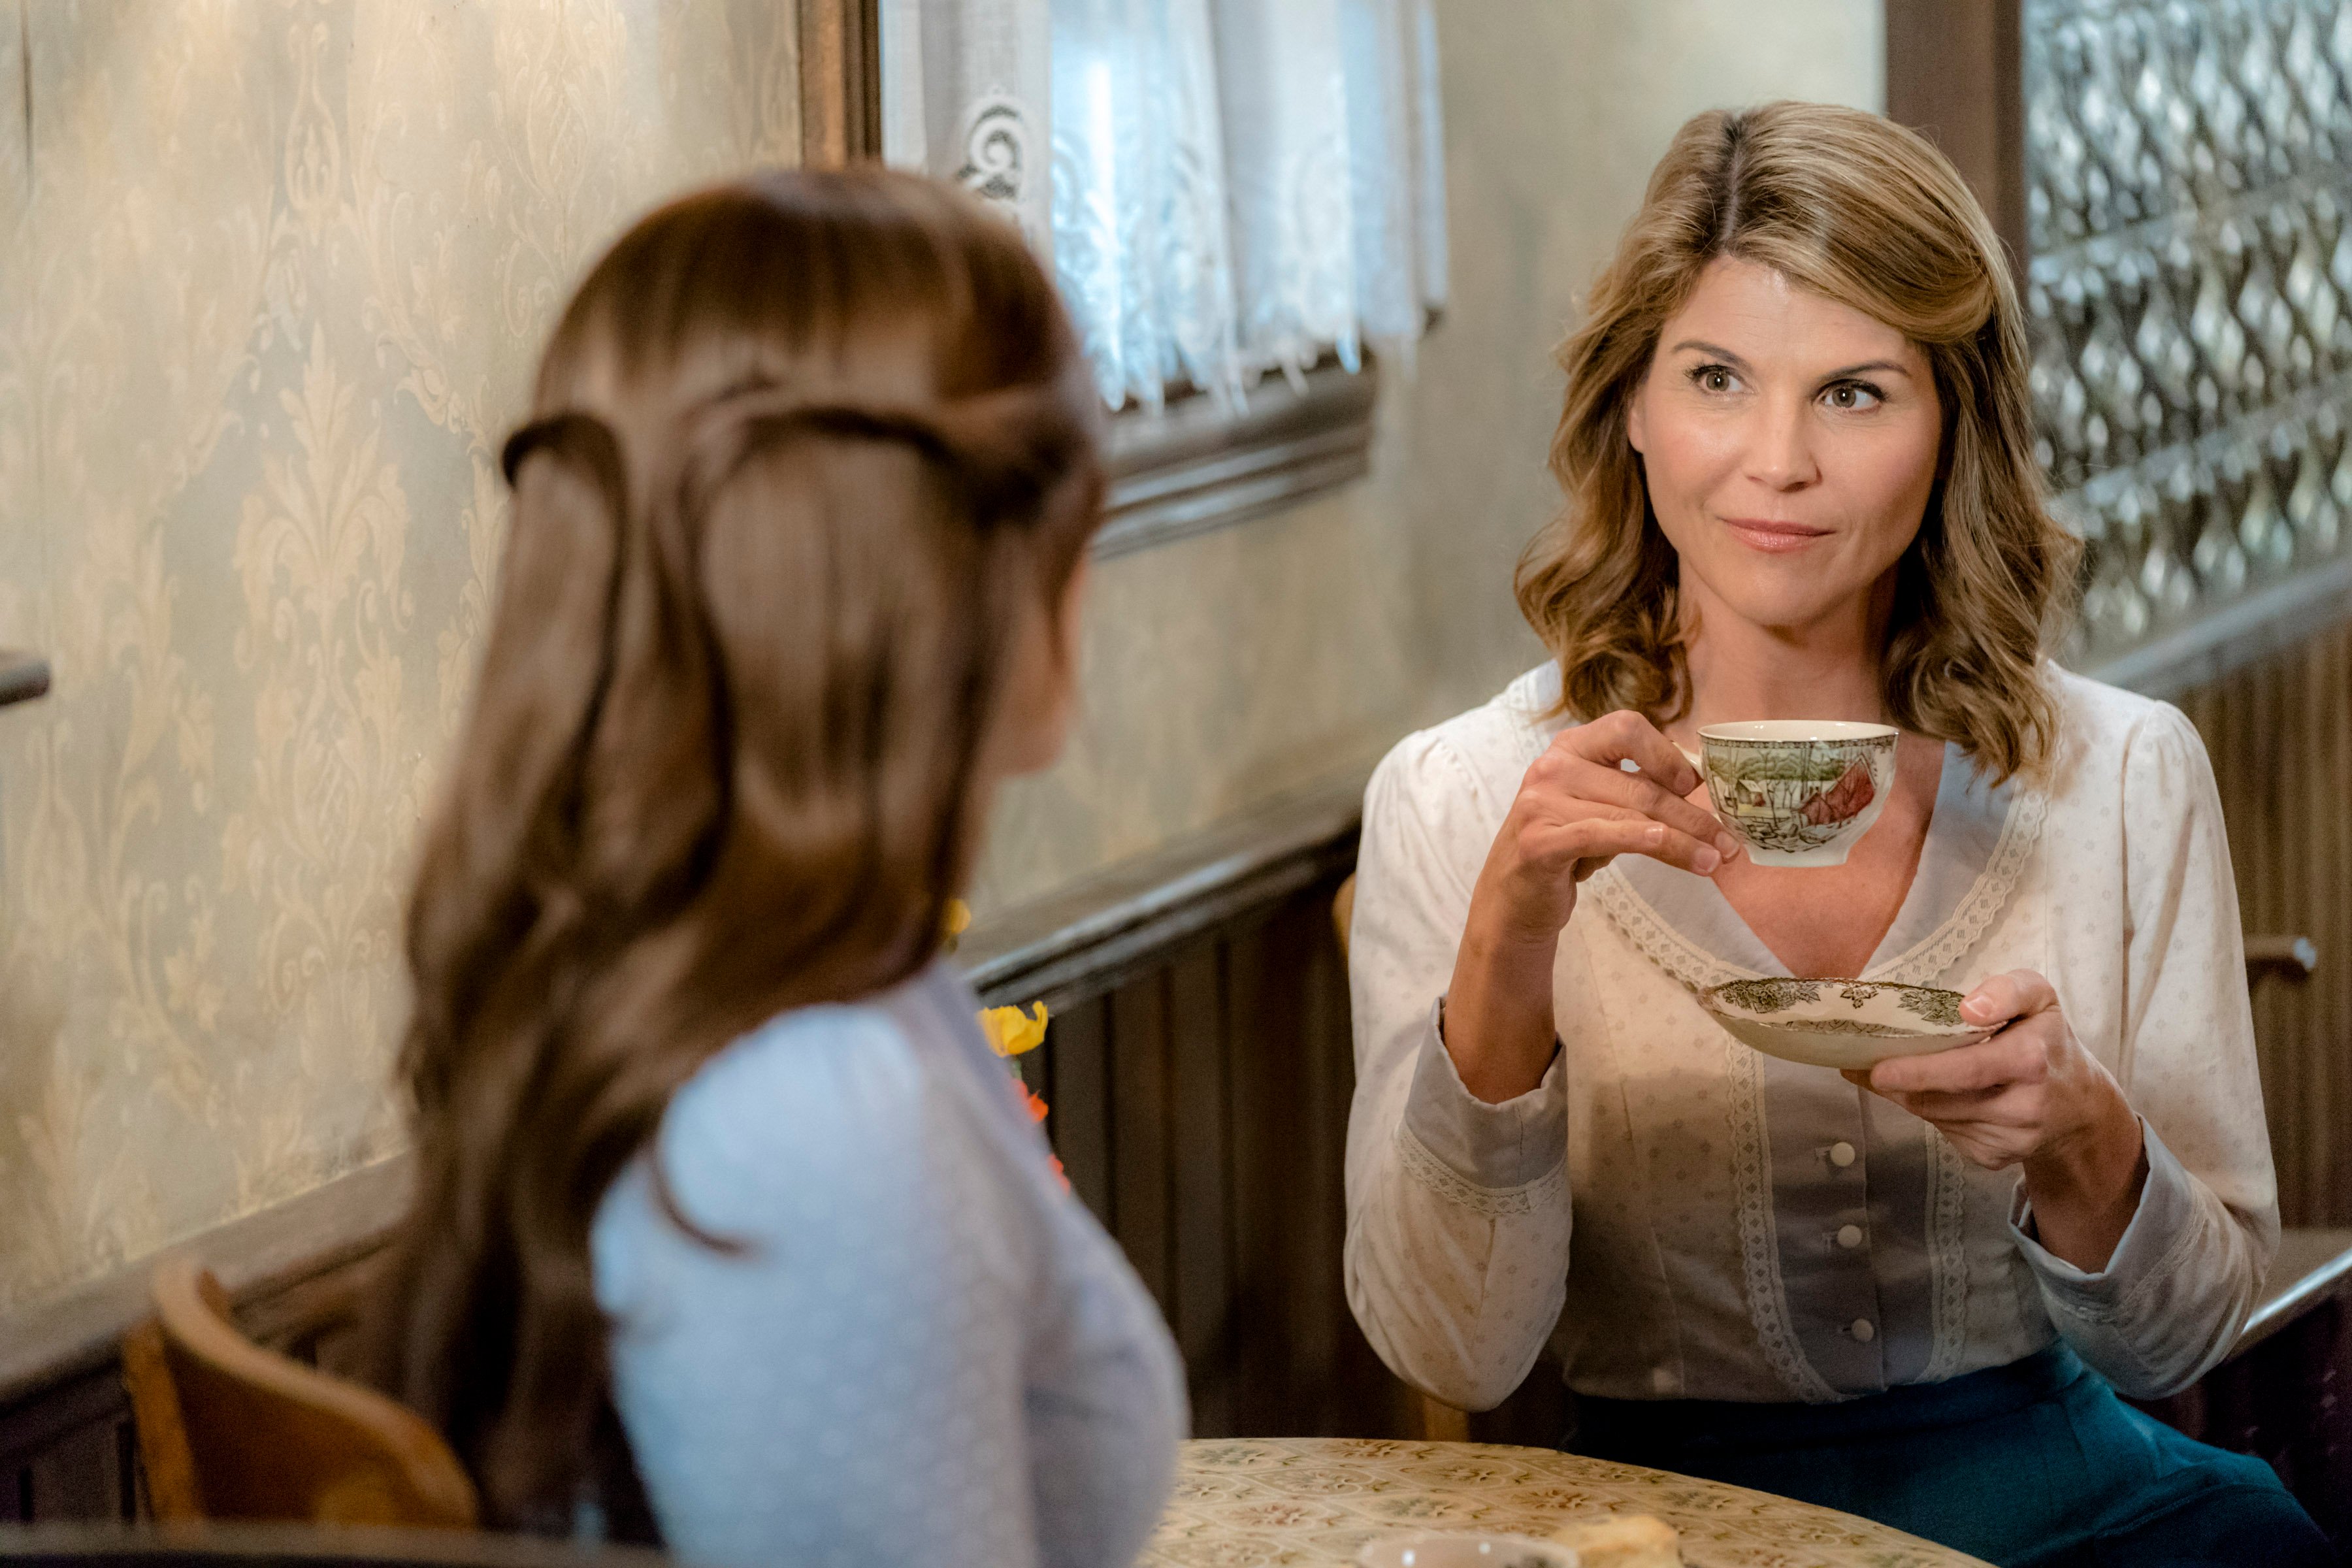 Lori Loughlin as Abigail, holding a teacup, in 'When Calls the Heart' Season 5